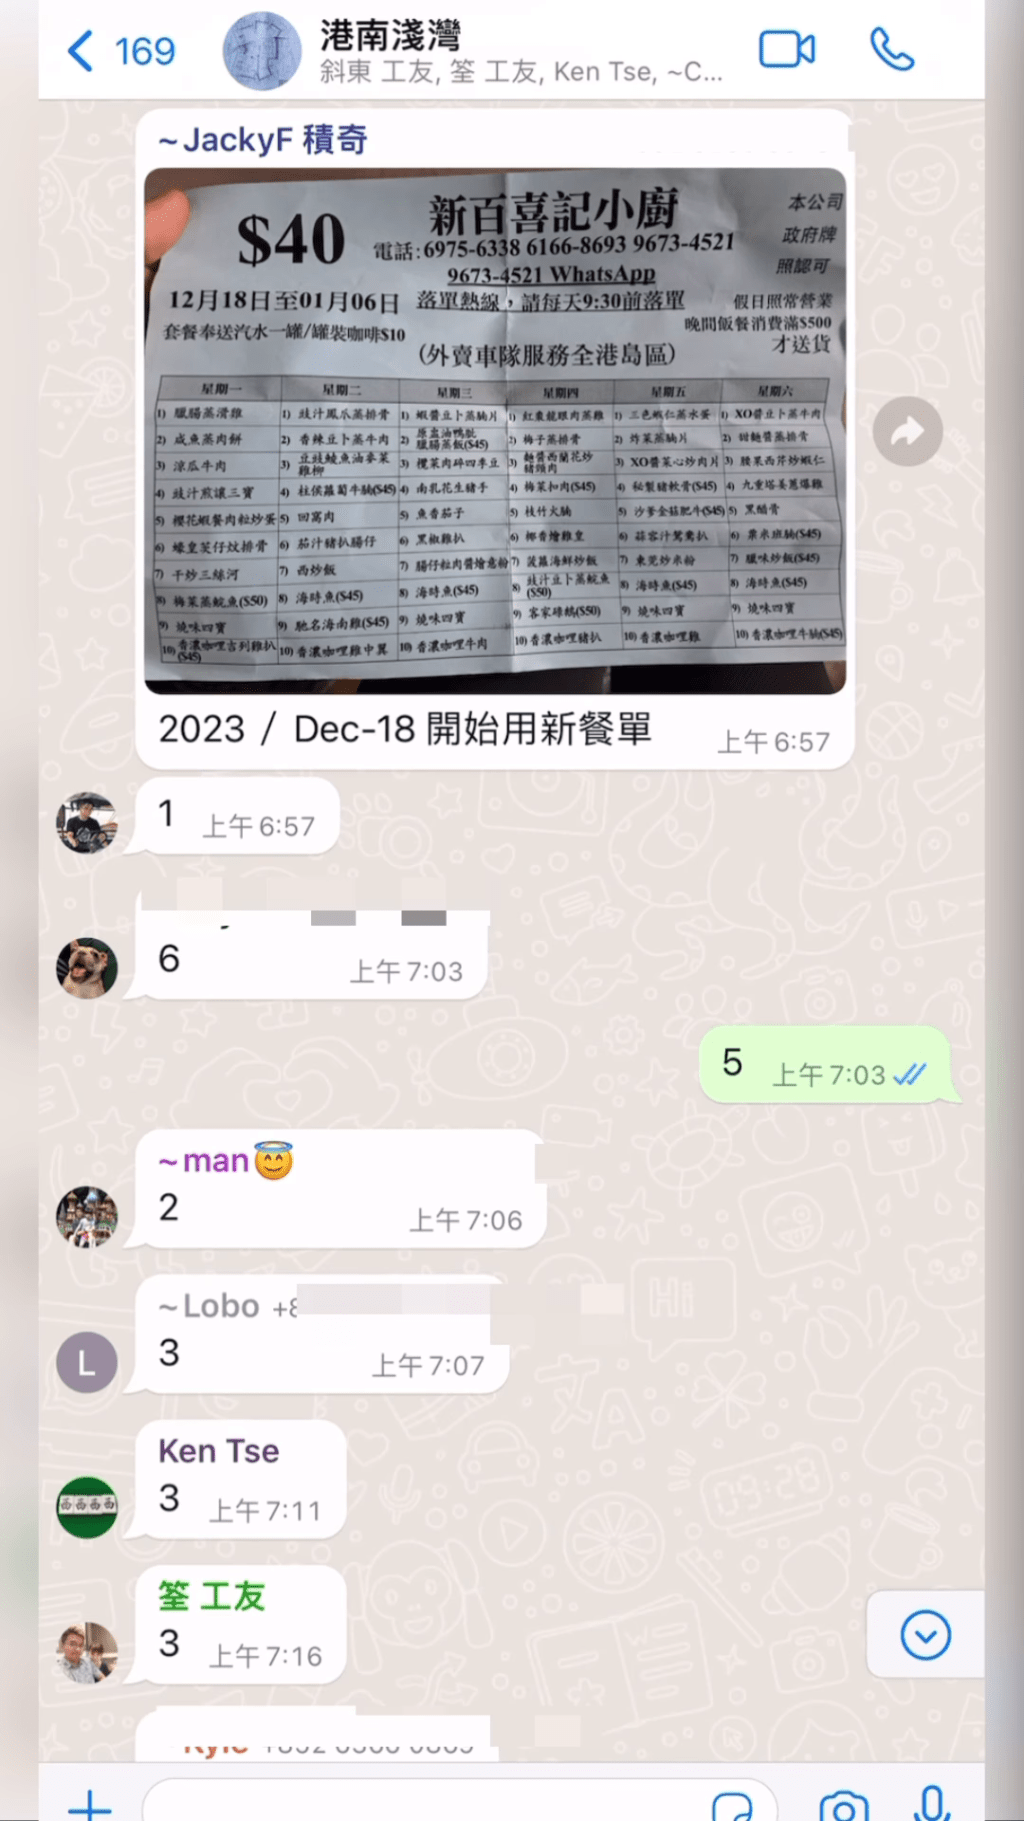 吴浩康亦分享「地盘饭」的落单程序，见工友早上7点已经在WhatsApp落单。